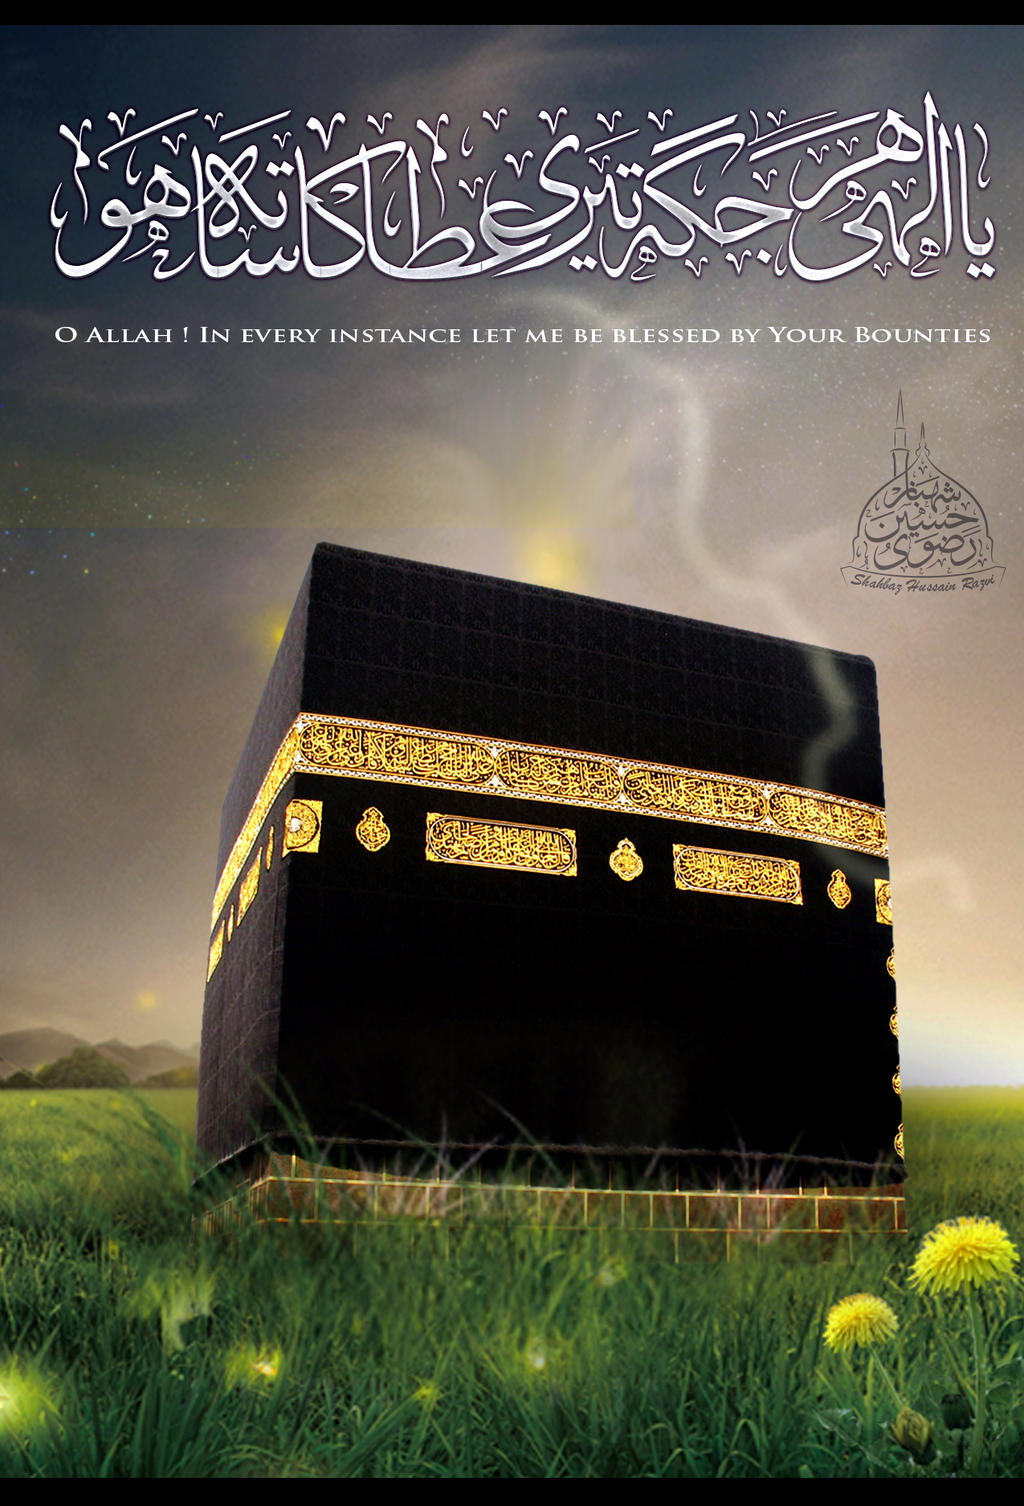 Ya ilahi har jagah| islamic wallpaper HD by SHAHBAZRAZVI on DeviantArt